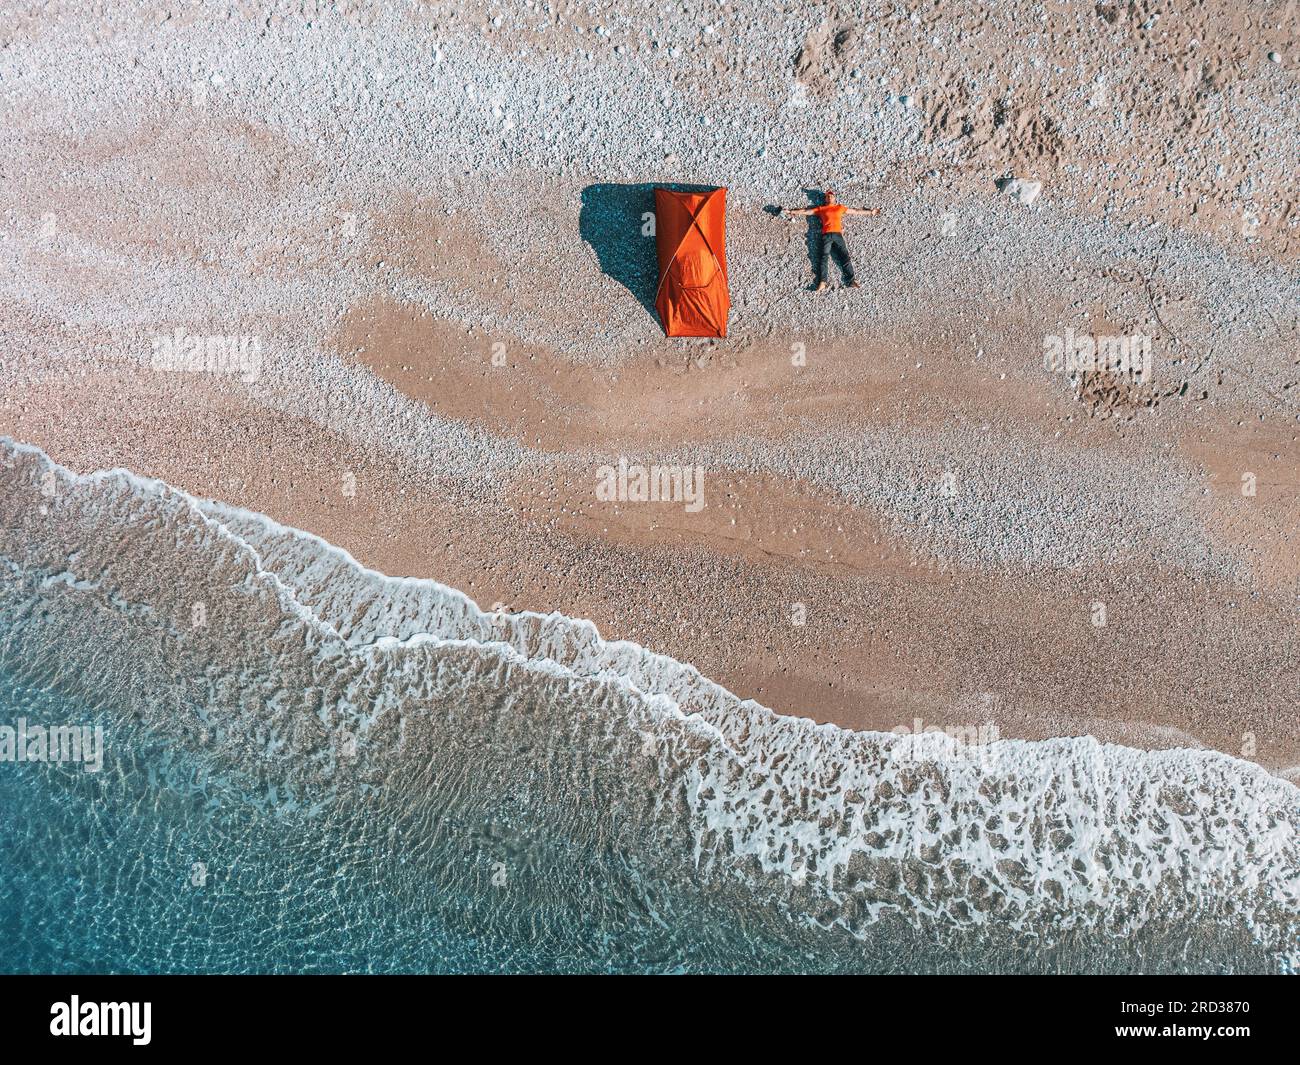 la foto di scorta con vista aerea mostra una scena di campeggio sulla spiaggia dove una tenda da uomo è disposta in uno stile piatto, affacciata sull'ipnotico mare. Foto Stock